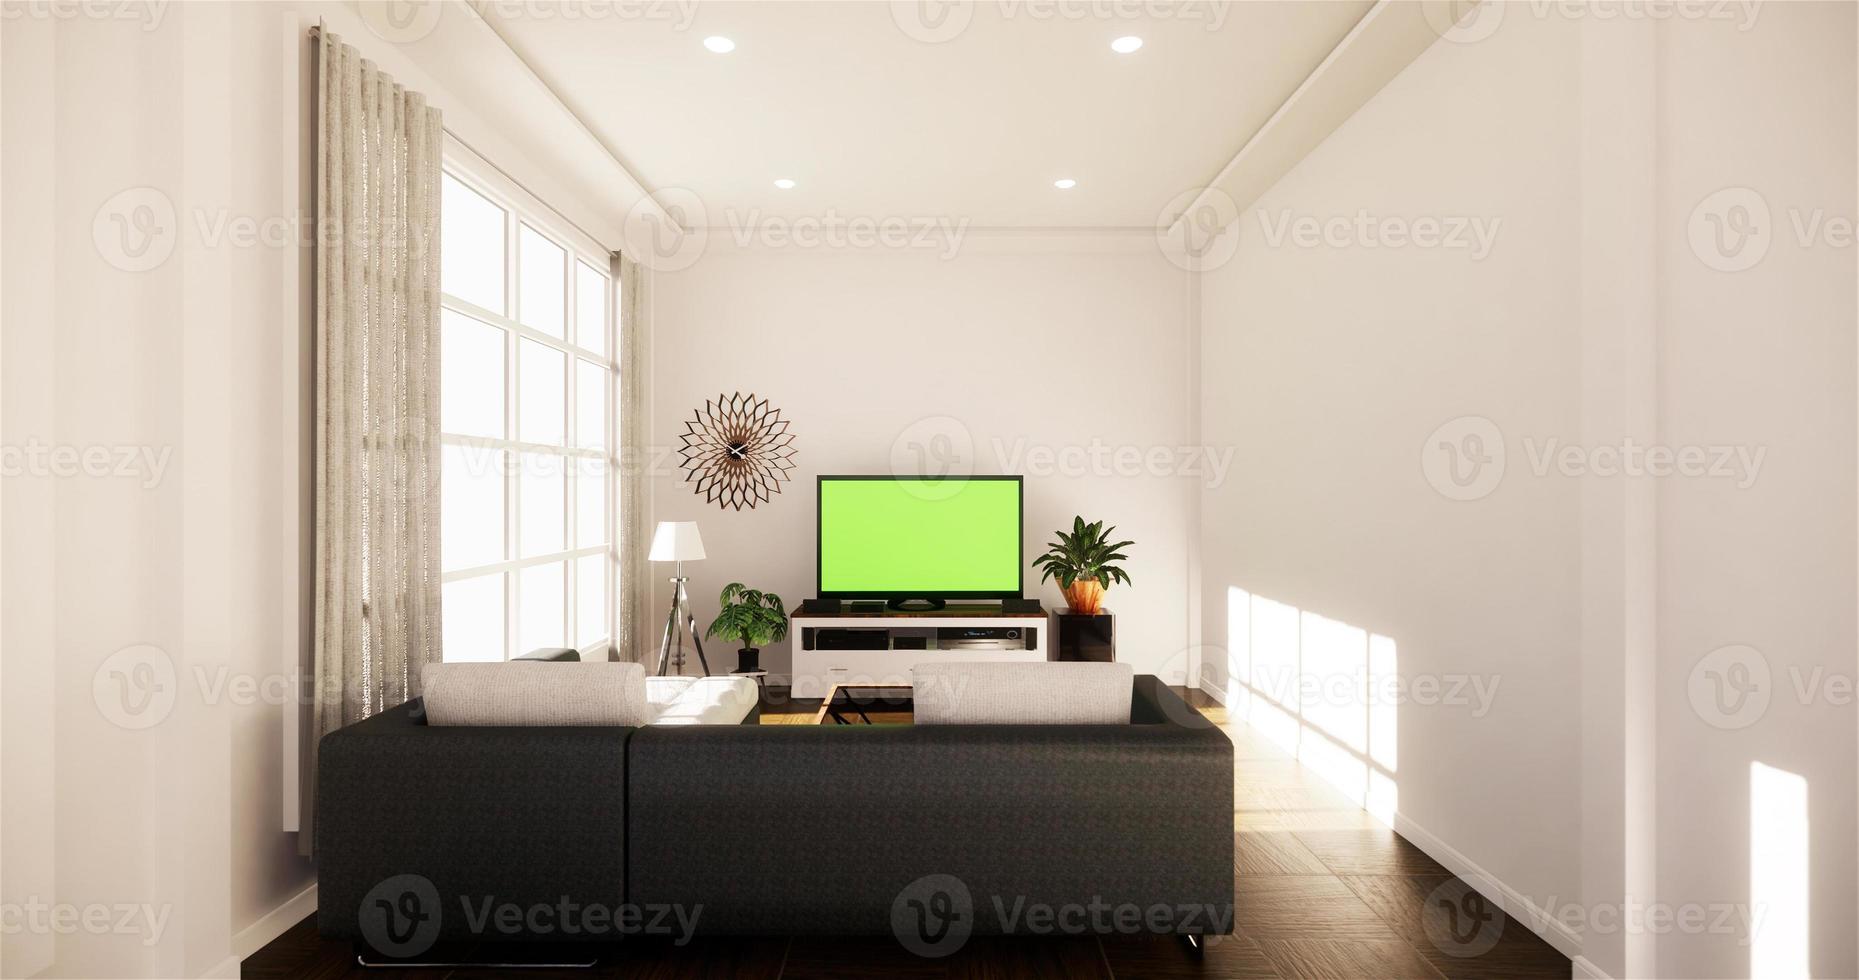 maquete de smart tv com tela preta em branco pendurada na decoração do gabinete, estilo zen de sala de estar moderna. Renderização 3d foto